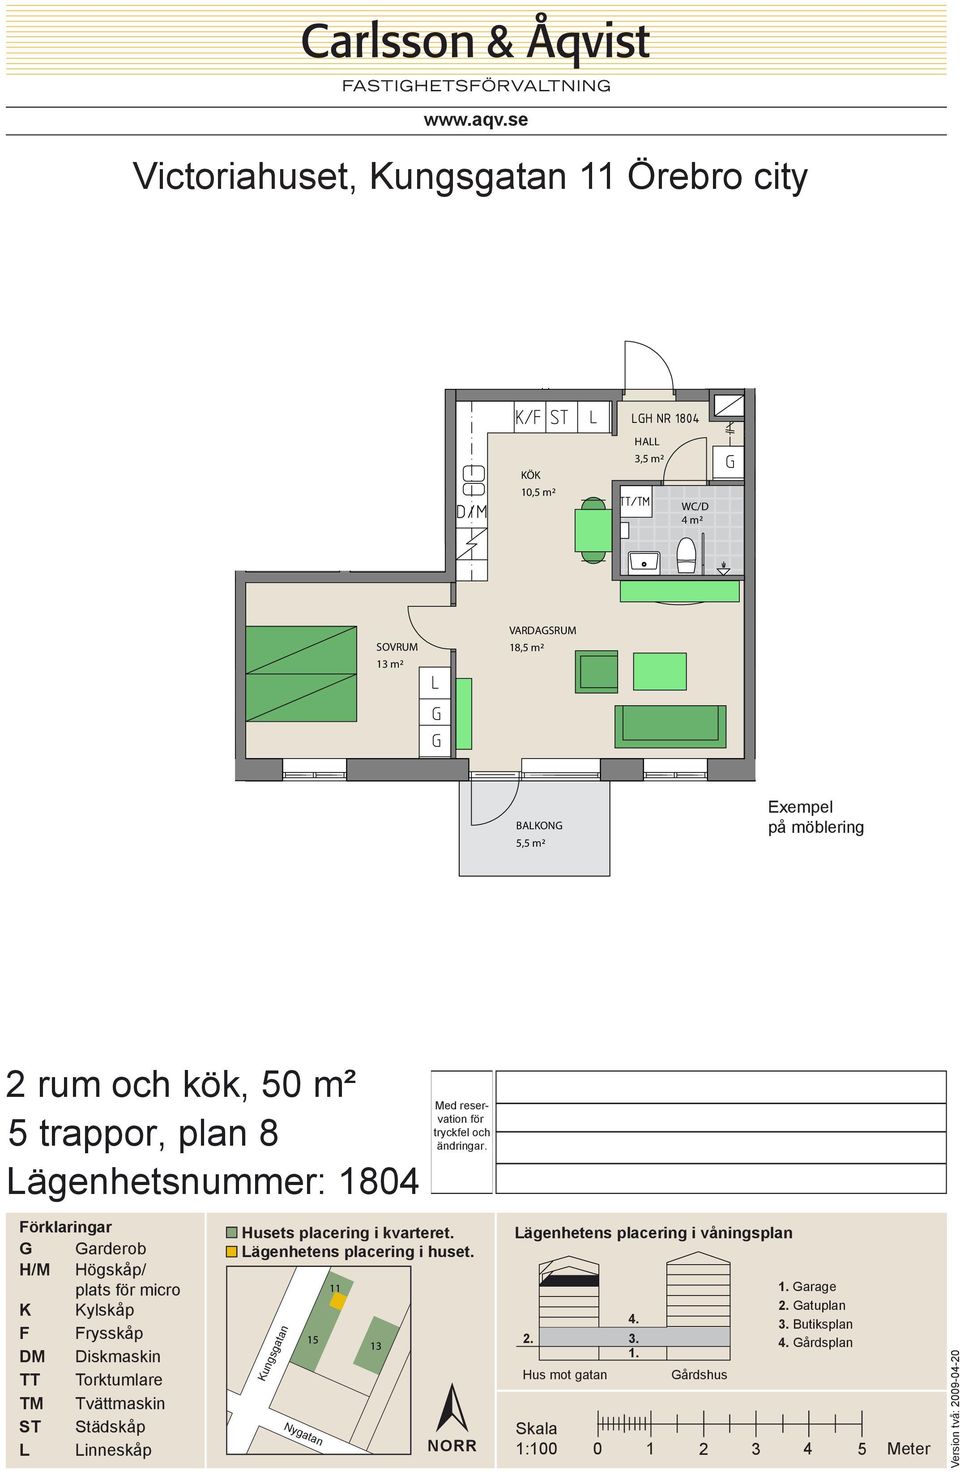 18,5 m² 5,5 m² 2 rum och